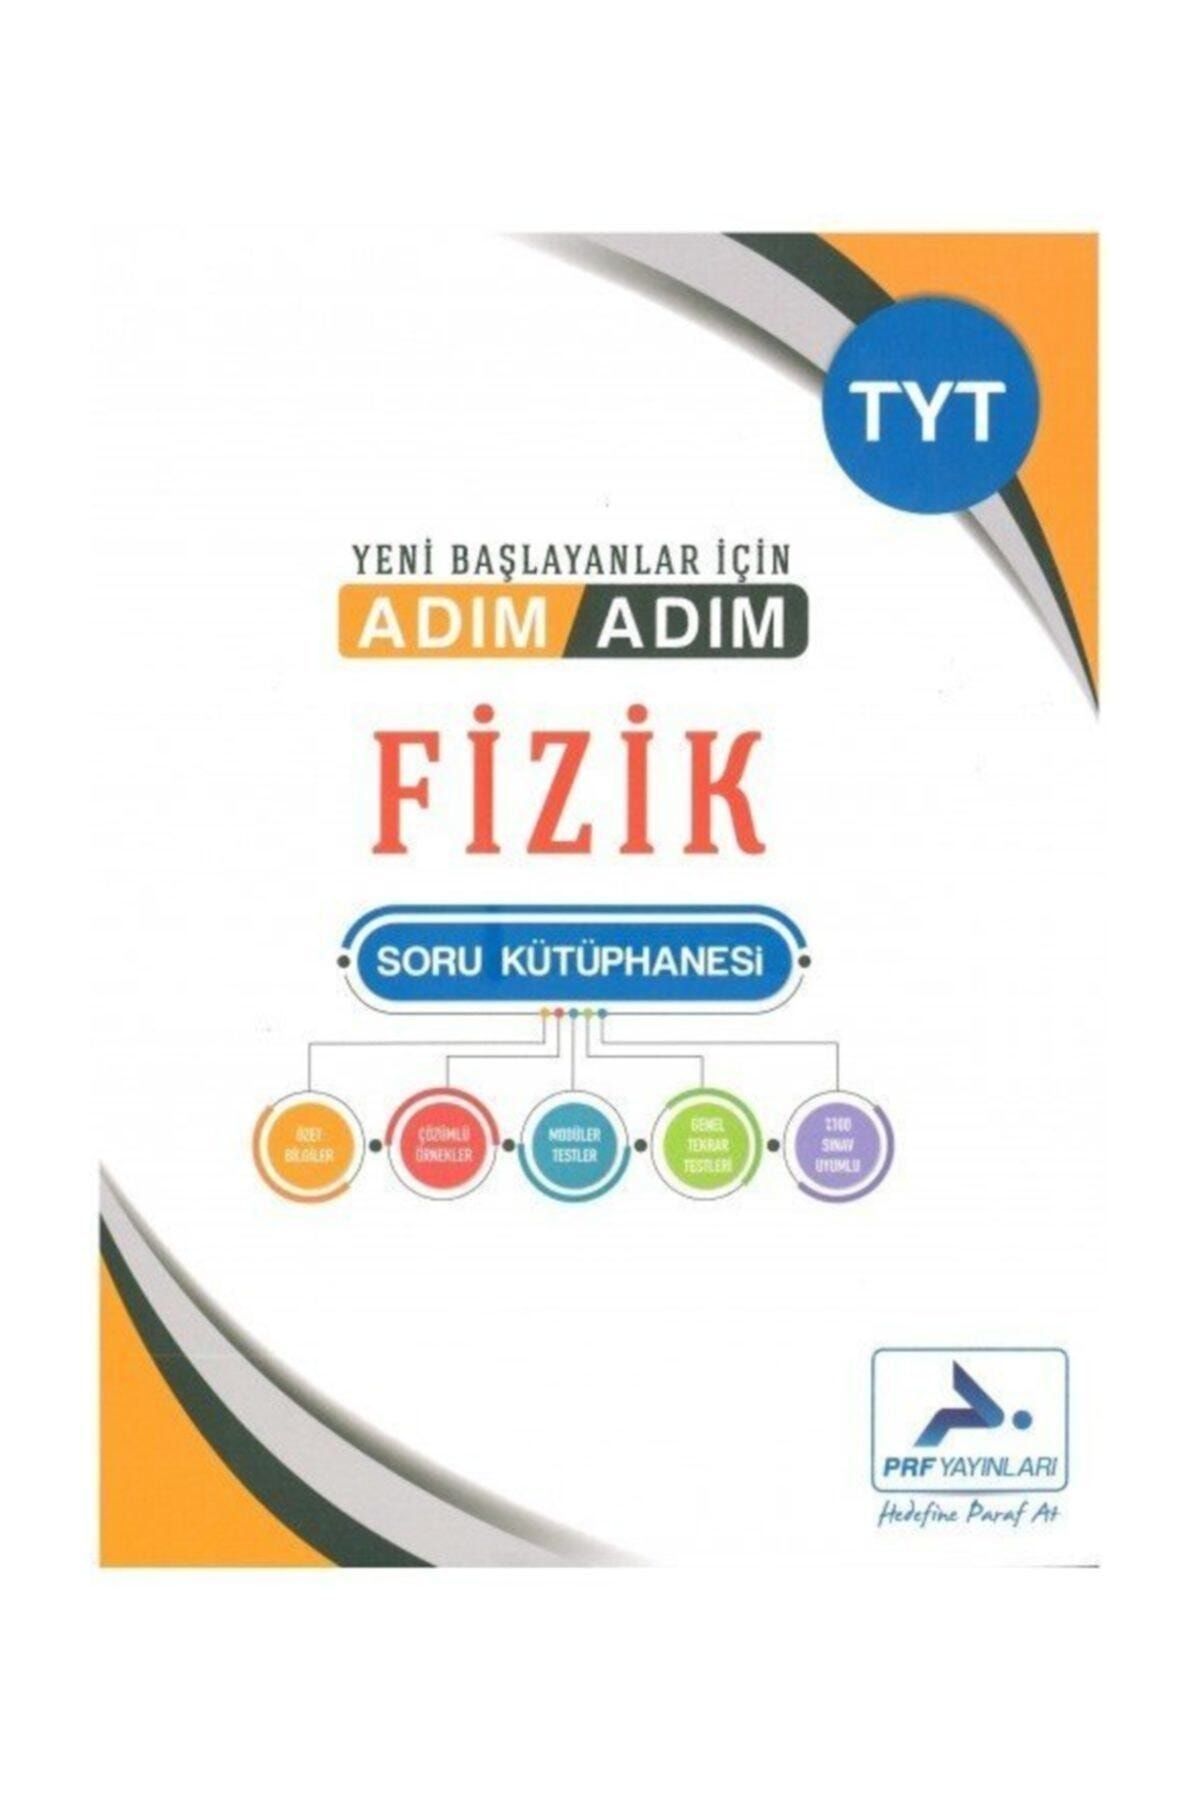 Paraf Yayınları Tyt Fizik Adım Adım Soru Kütüphanesi Çözümsüz